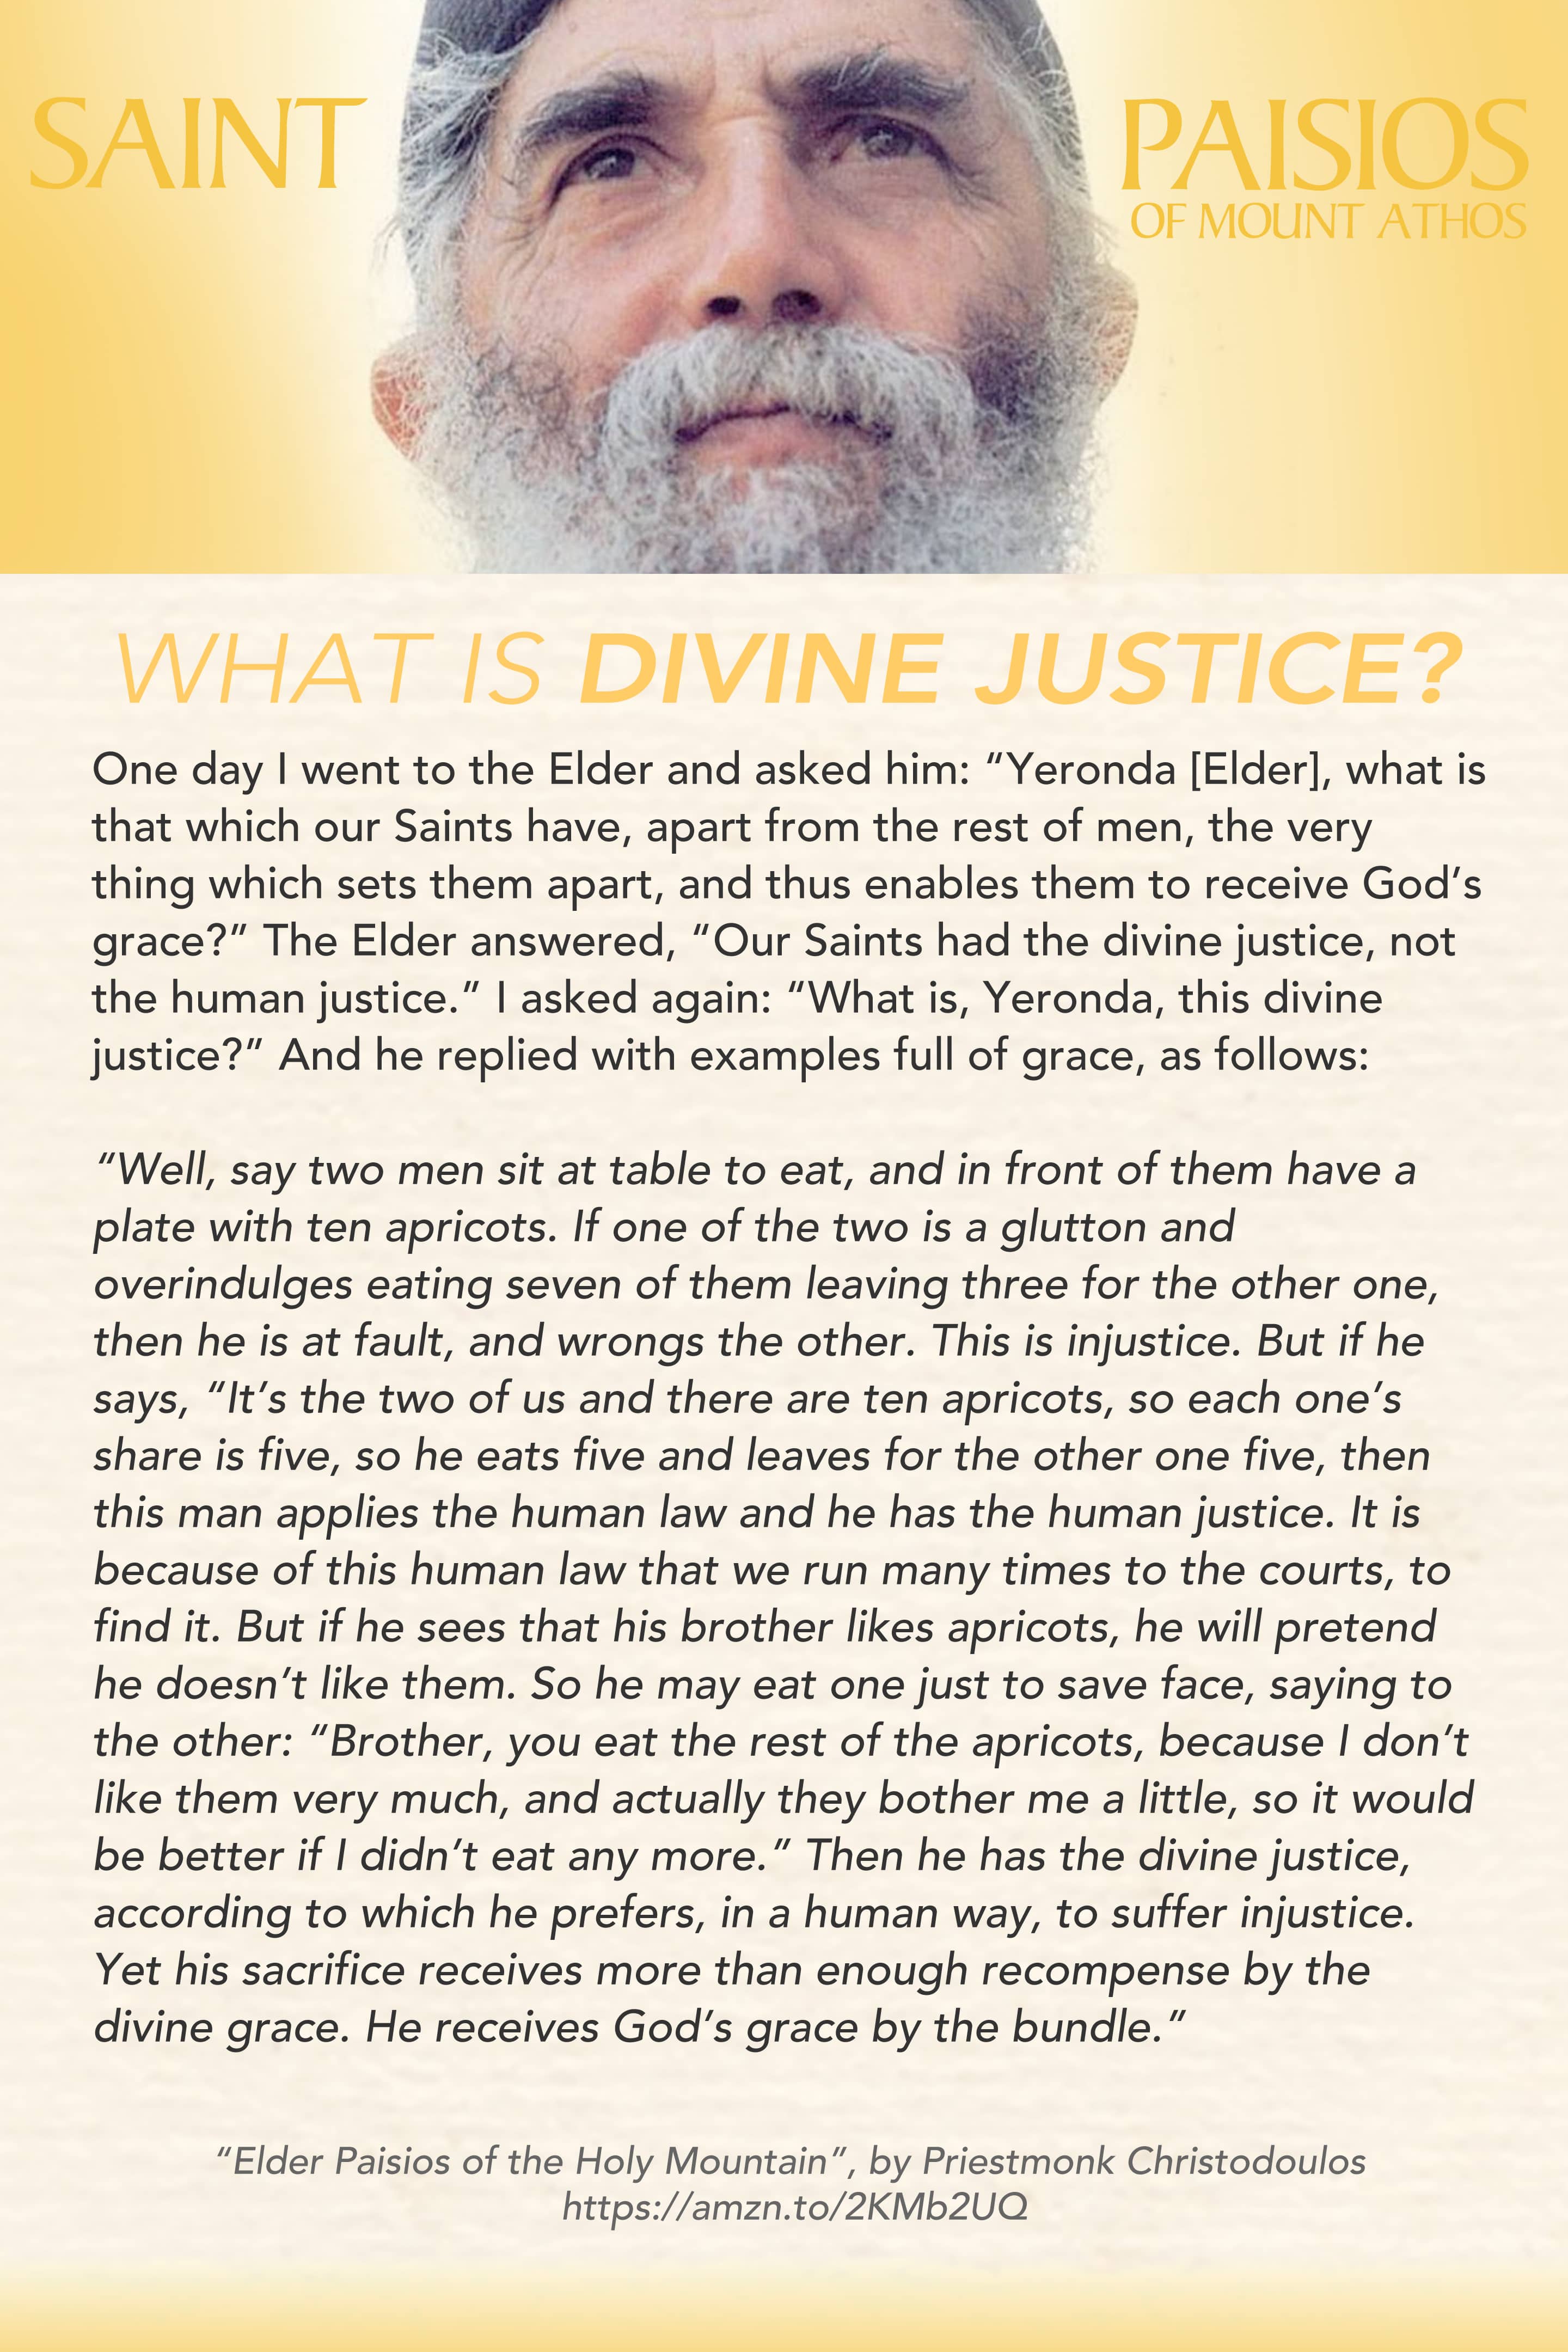 Divine justice